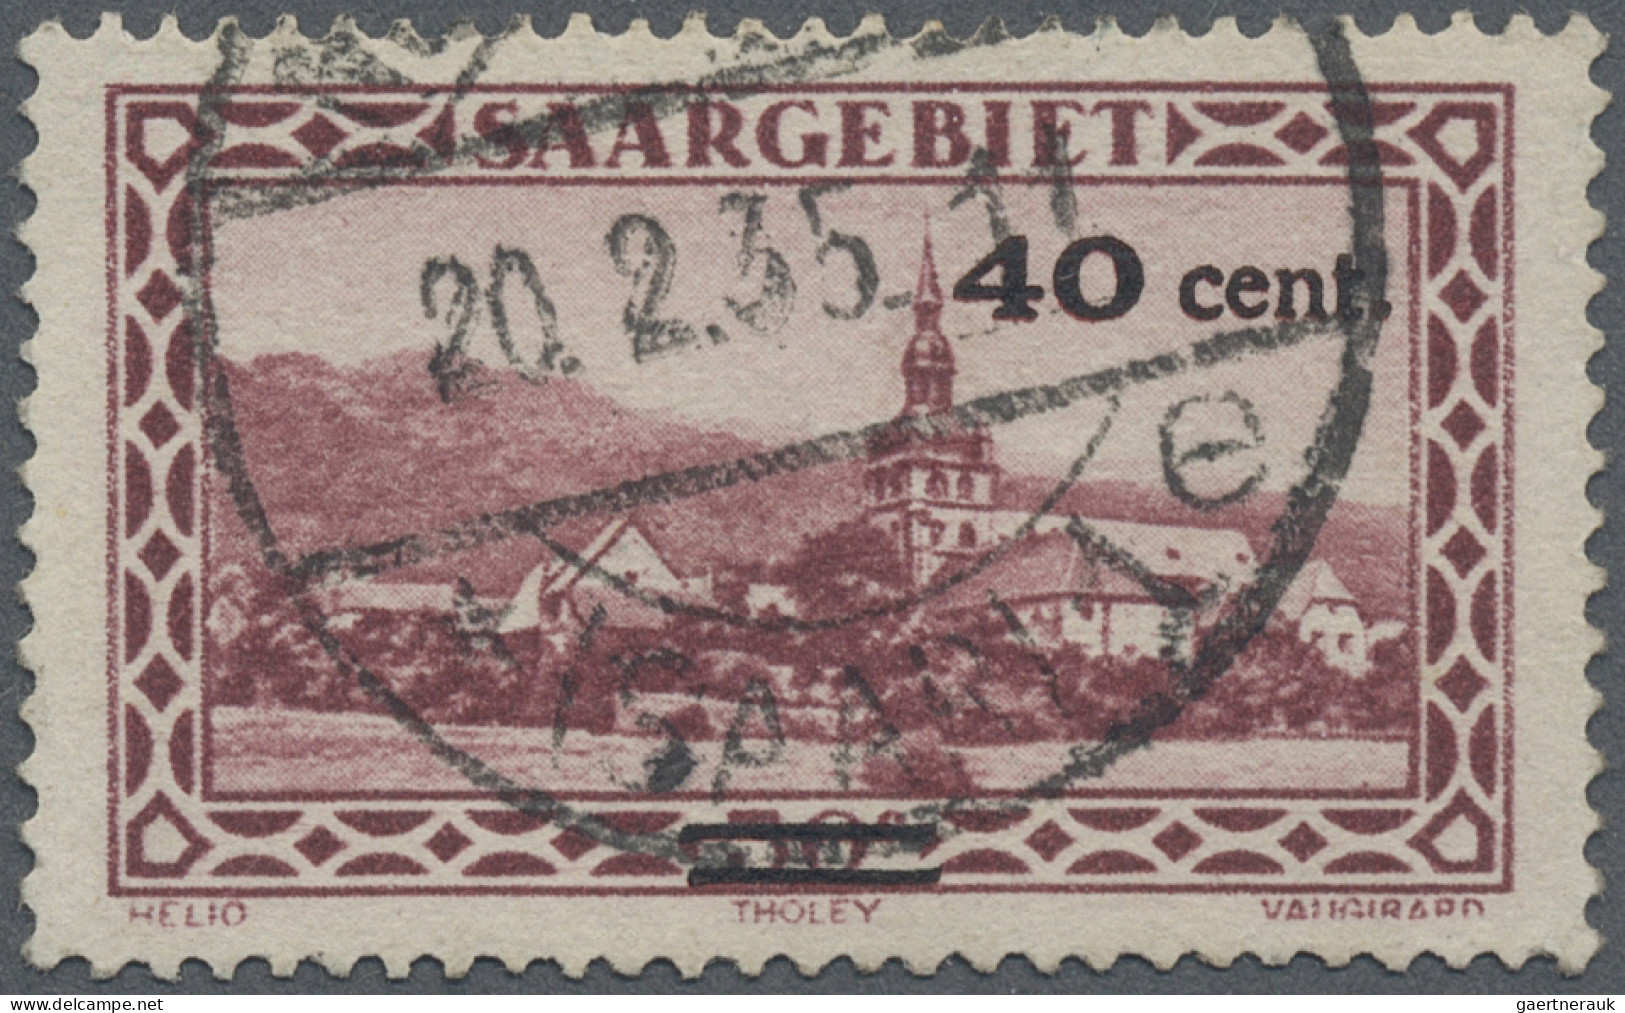 Deutsche Abstimmungsgebiete: Saargebiet: 1934 Aushilfsausgabe 40 C. Auf 50 C. Mi - Used Stamps